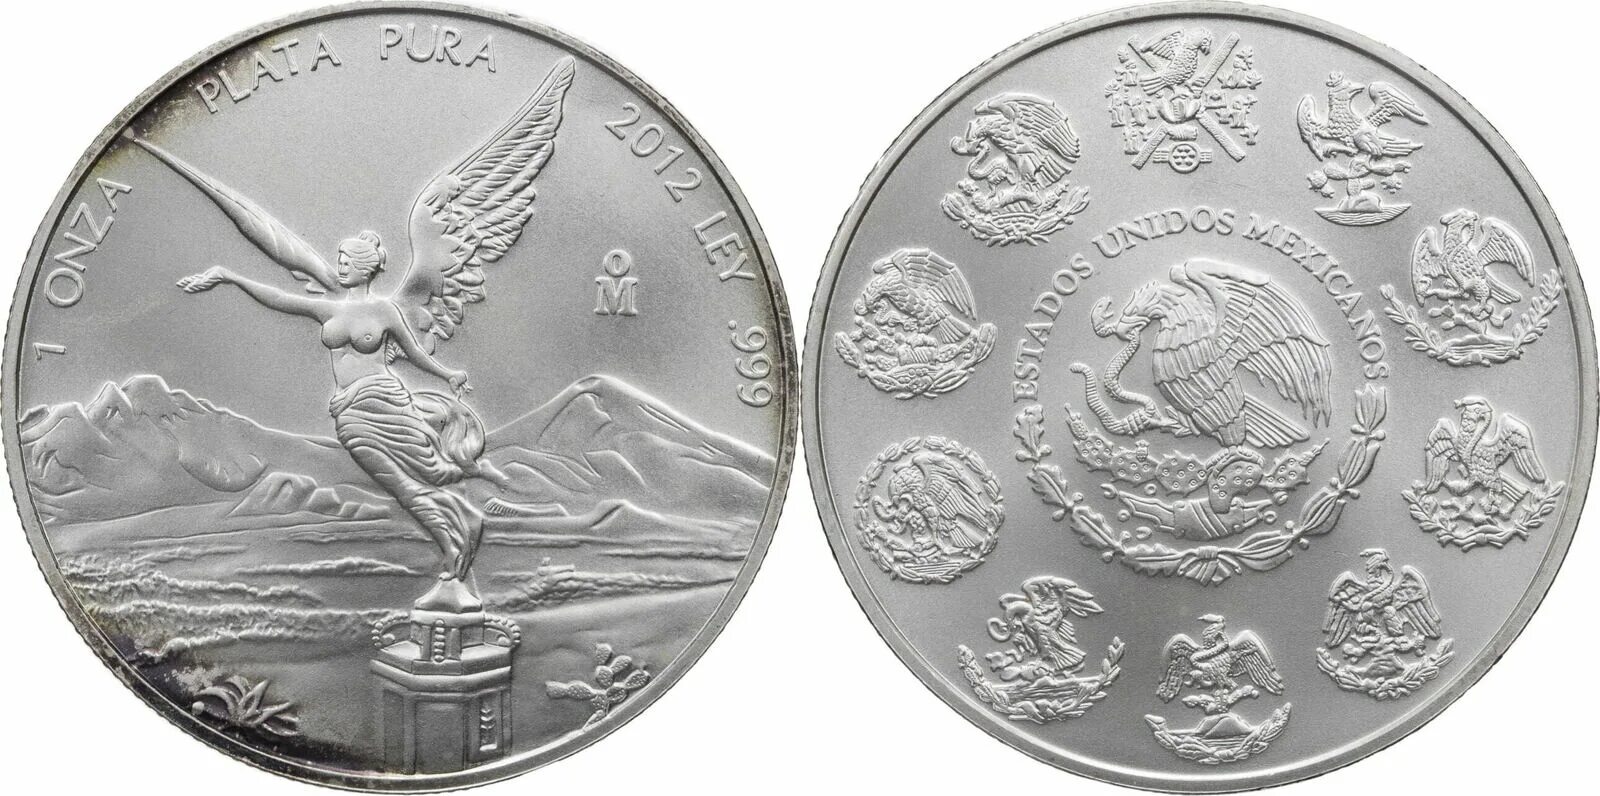 Серебро пробы монеты. Мексика 1 онза, 2001. Мексиканская монета 2005 года. Самая красивая монета в мире Мексика. Мексиканская серебряная монета 2005 года.